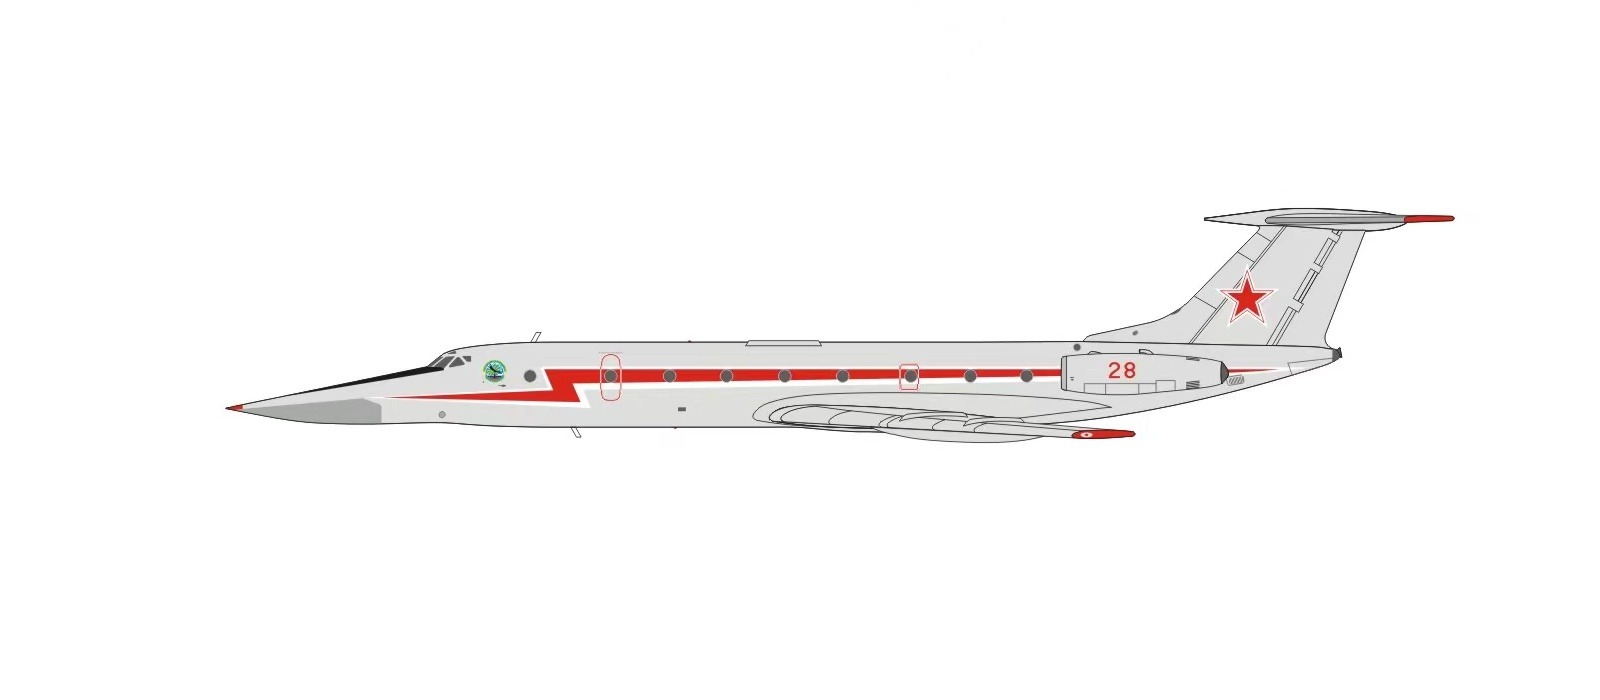 PM202208 PandaModel Russian Air Force / ロシア航空宇宙軍 Tu-134UB-L 28 red 1:400  メーカー完売